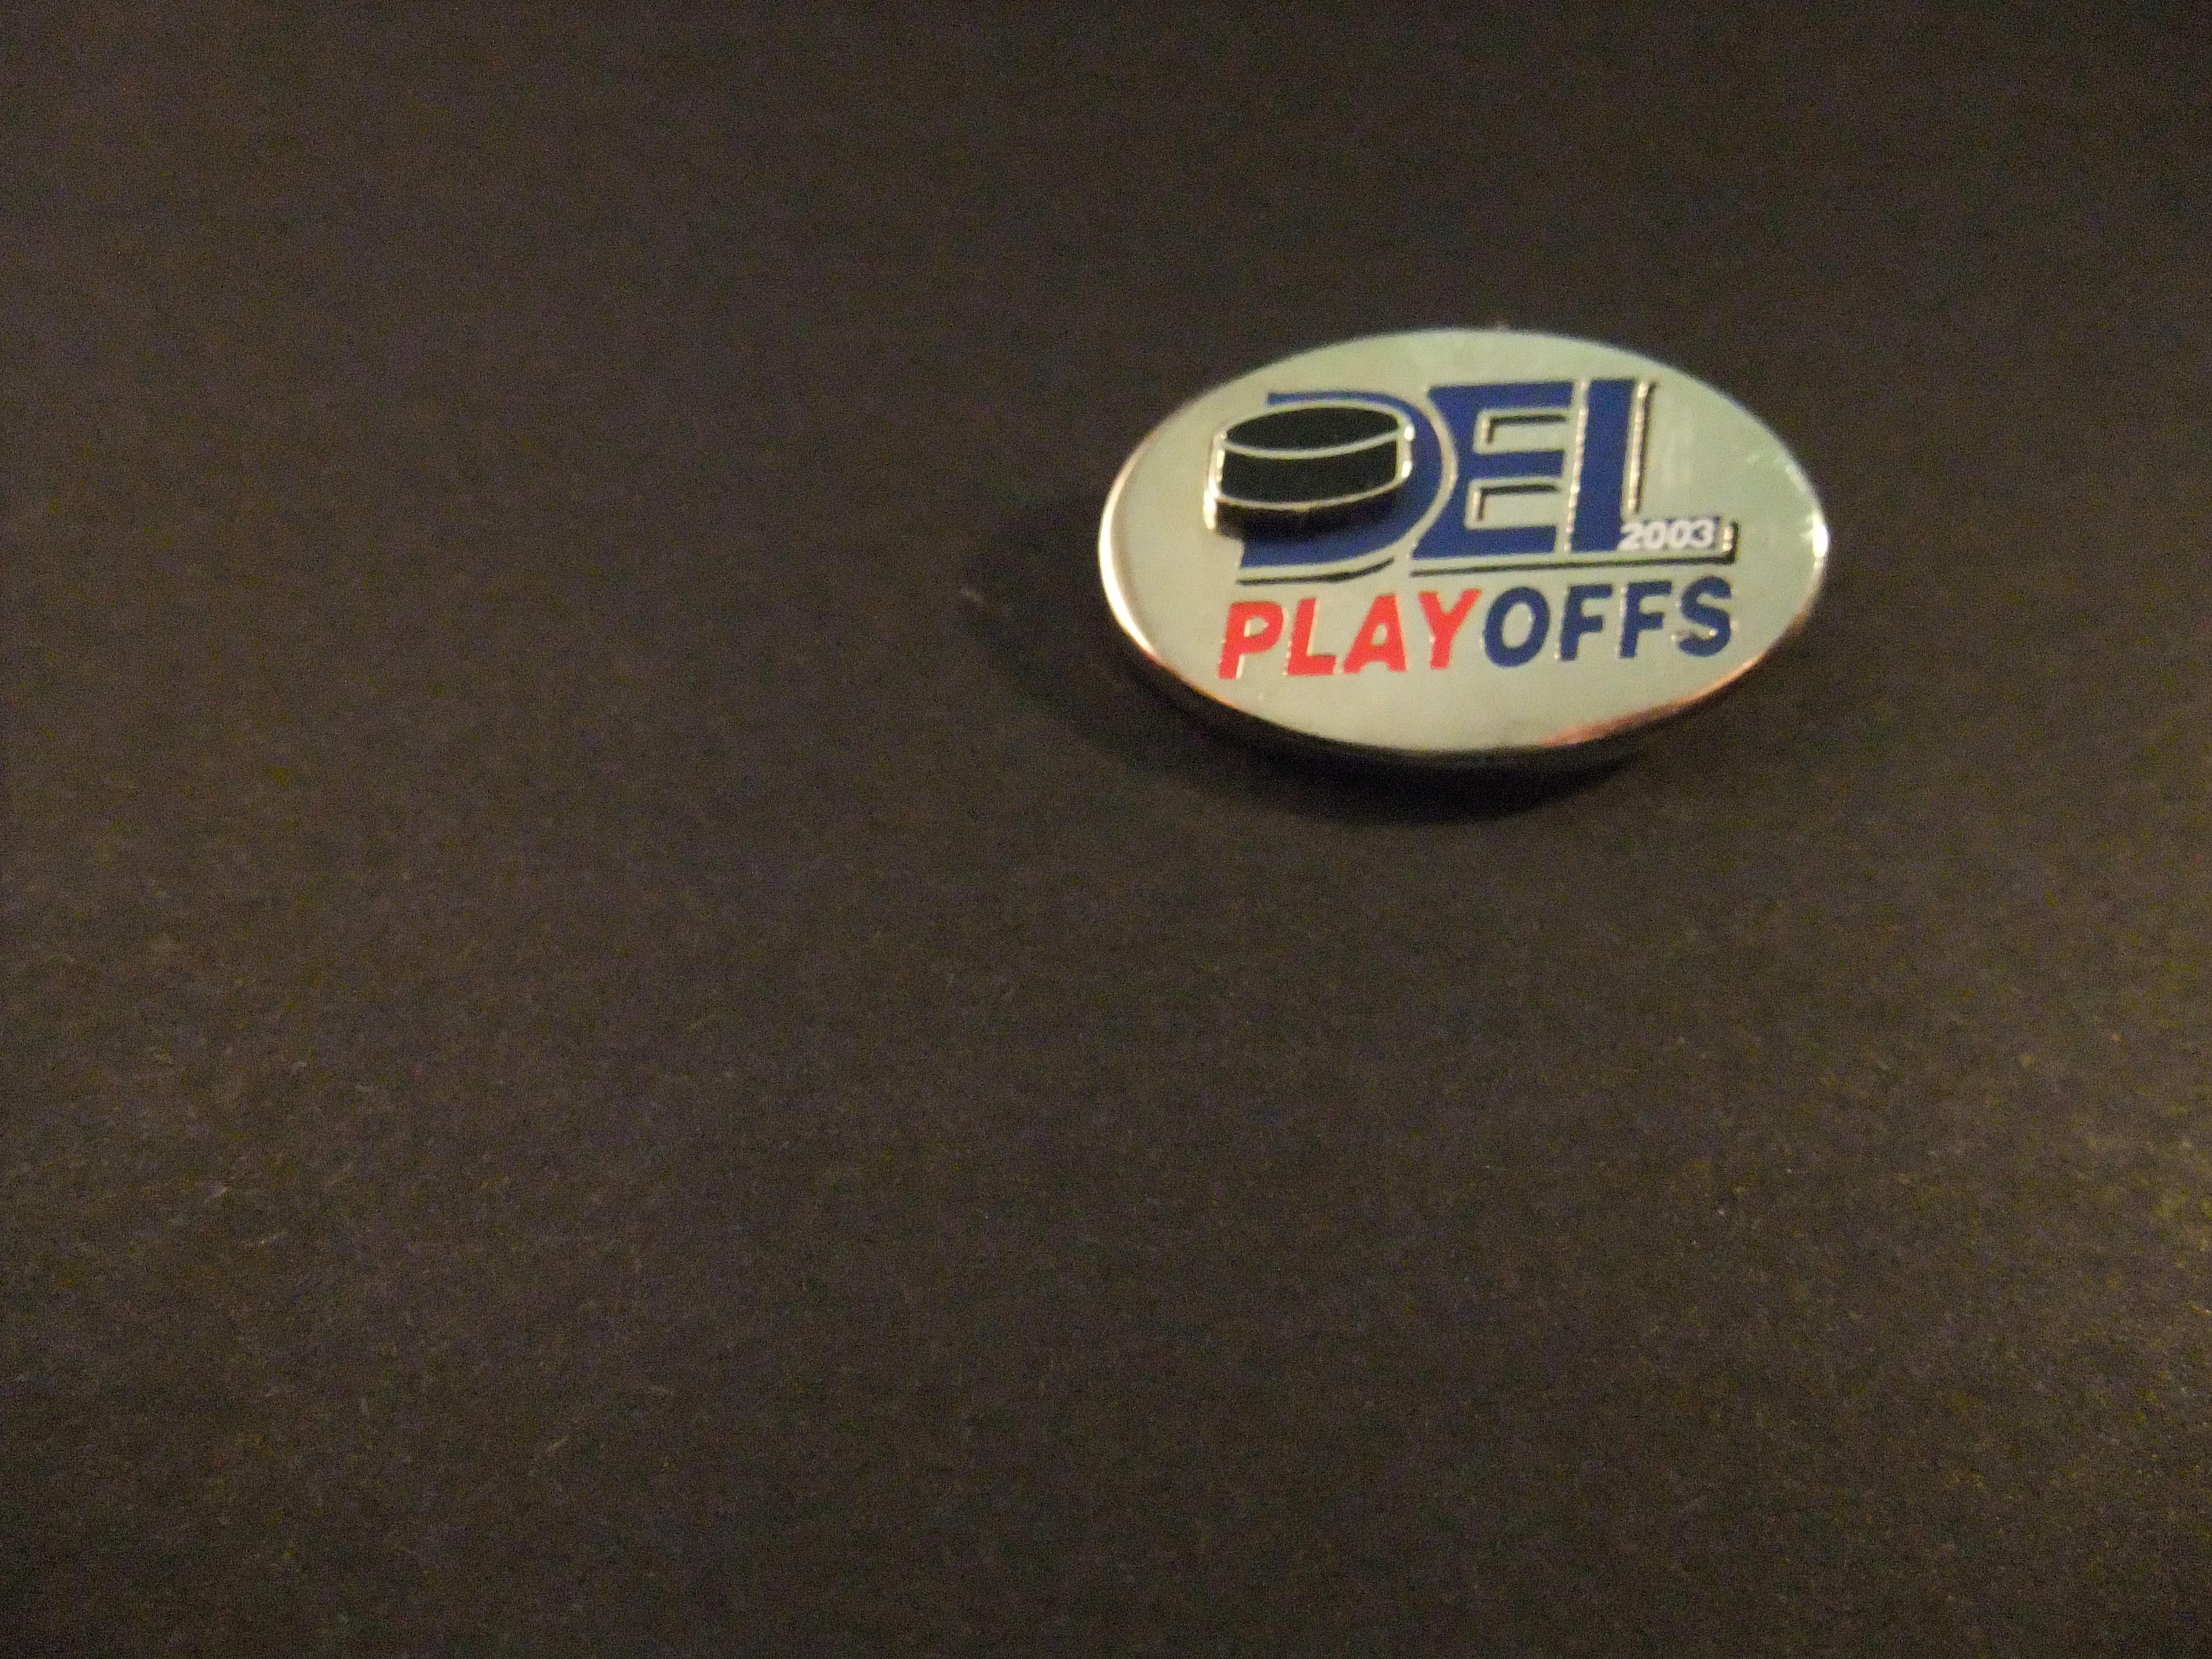 DEL ( Deutsche Eishockey Liga ) Playoffs 2003